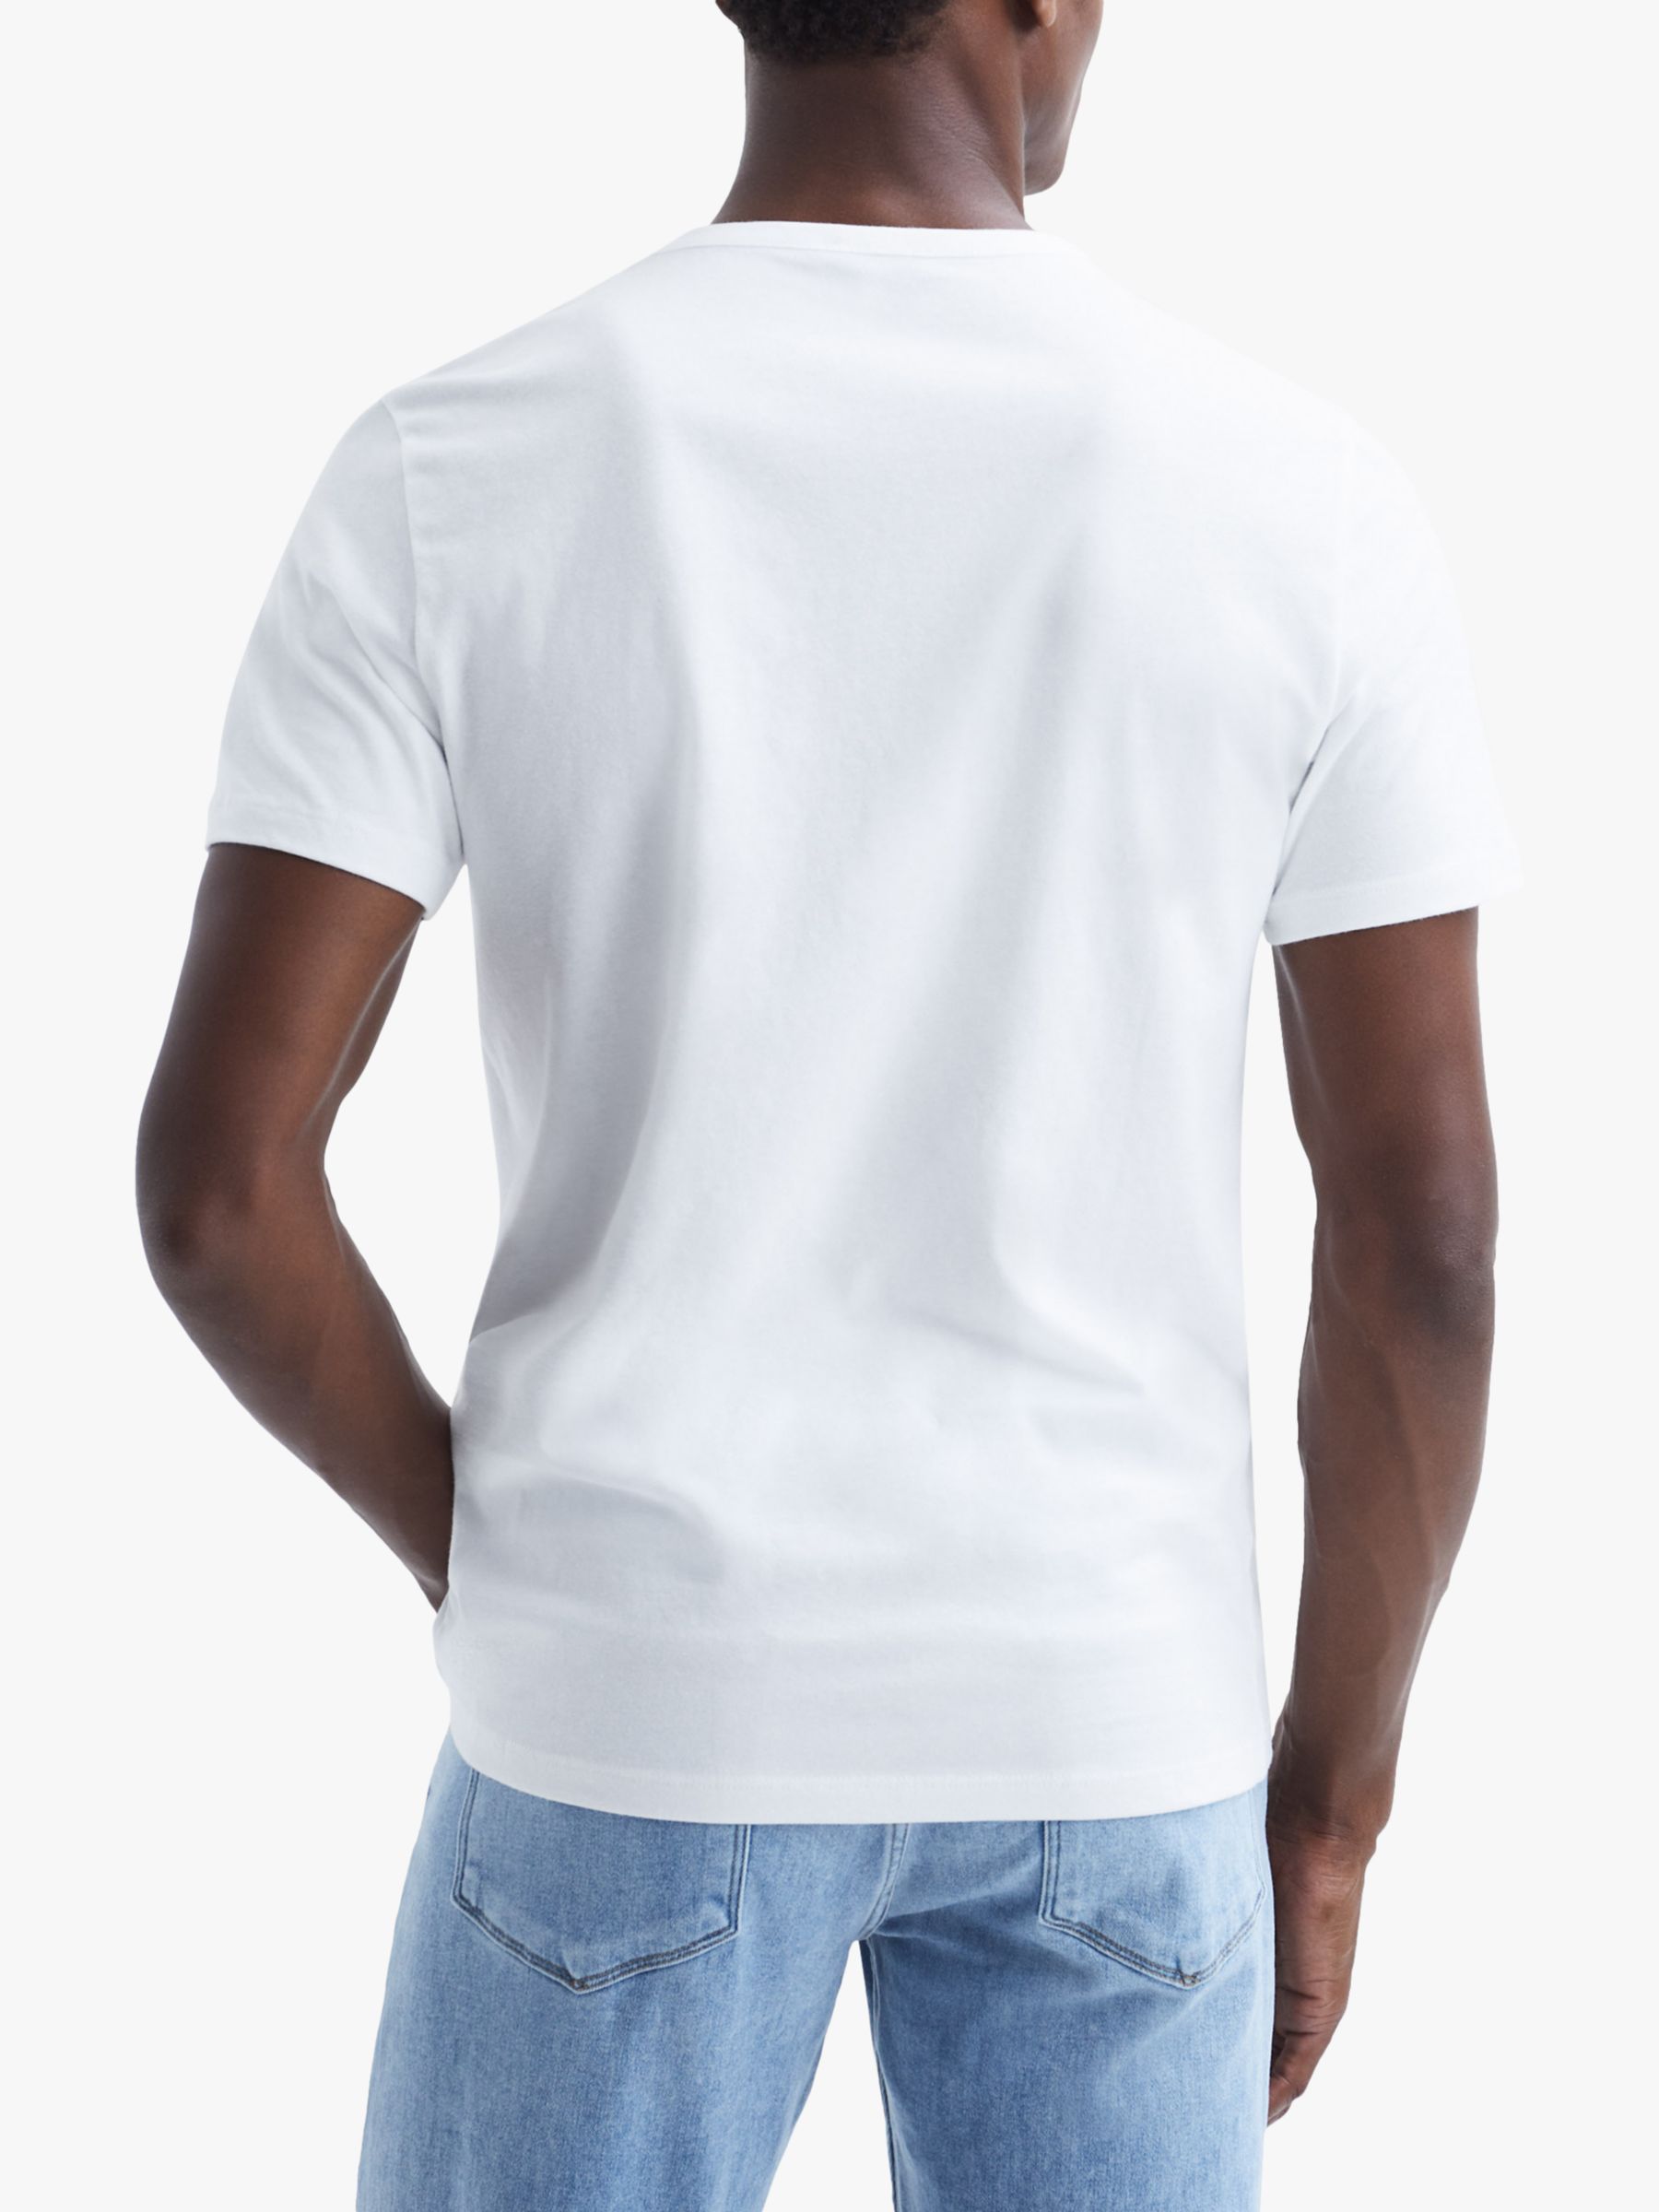 Reiss Melrose Cotton Crew Neck T-Shirt, Optic White, XS